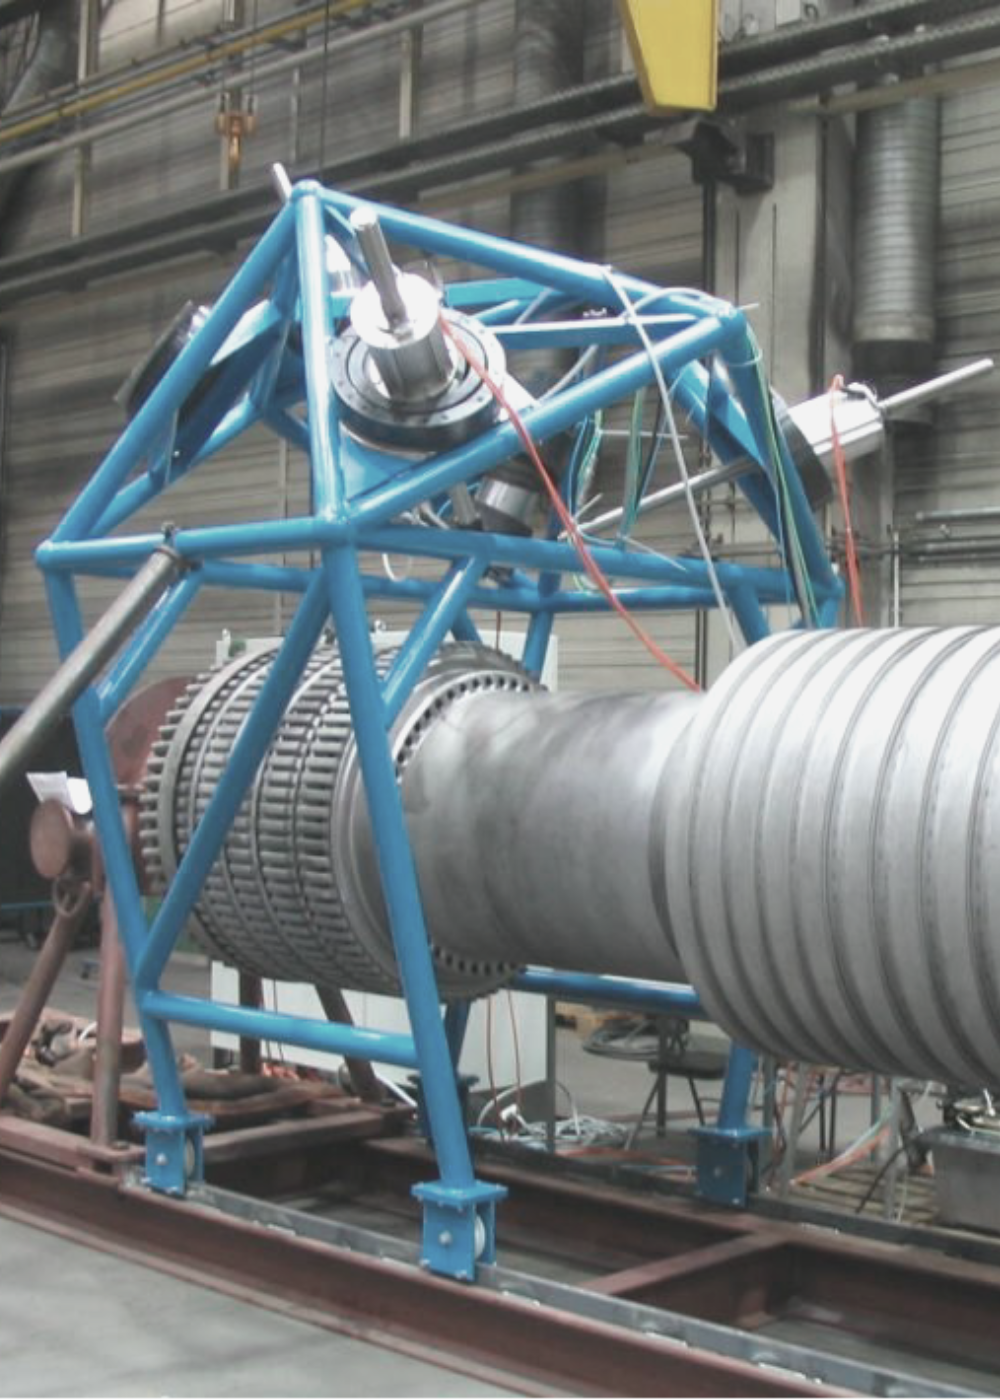 Repairing turbine